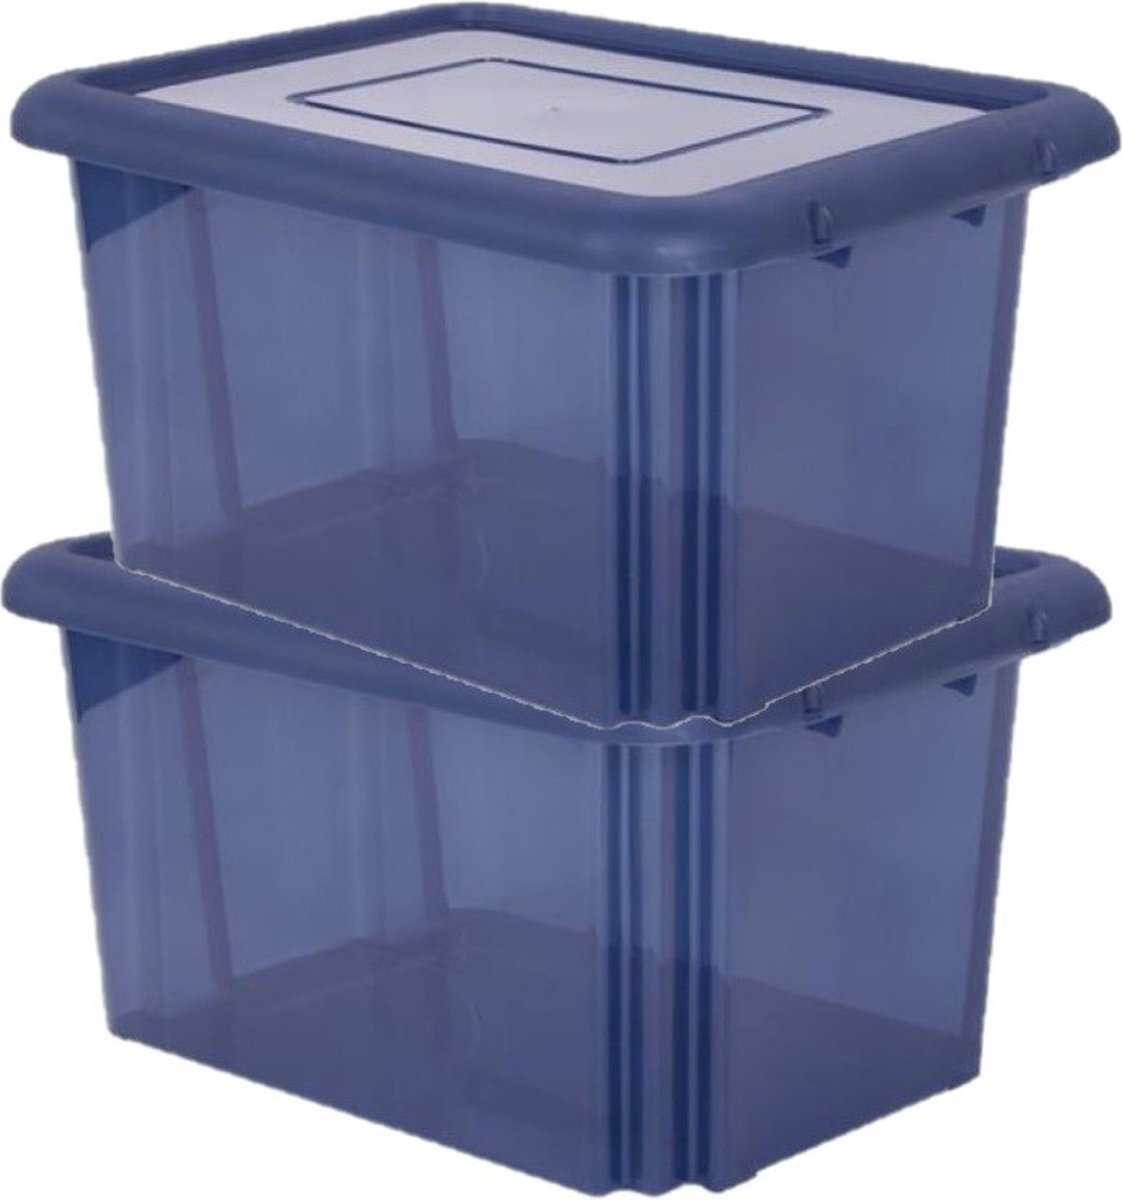 8x stuks kunststof opbergboxen/opbergdozen donkerblauw transparant L58 x B44 x H31 cm stapelbaar - Voorraad/opberg boxen/bakken met deksel